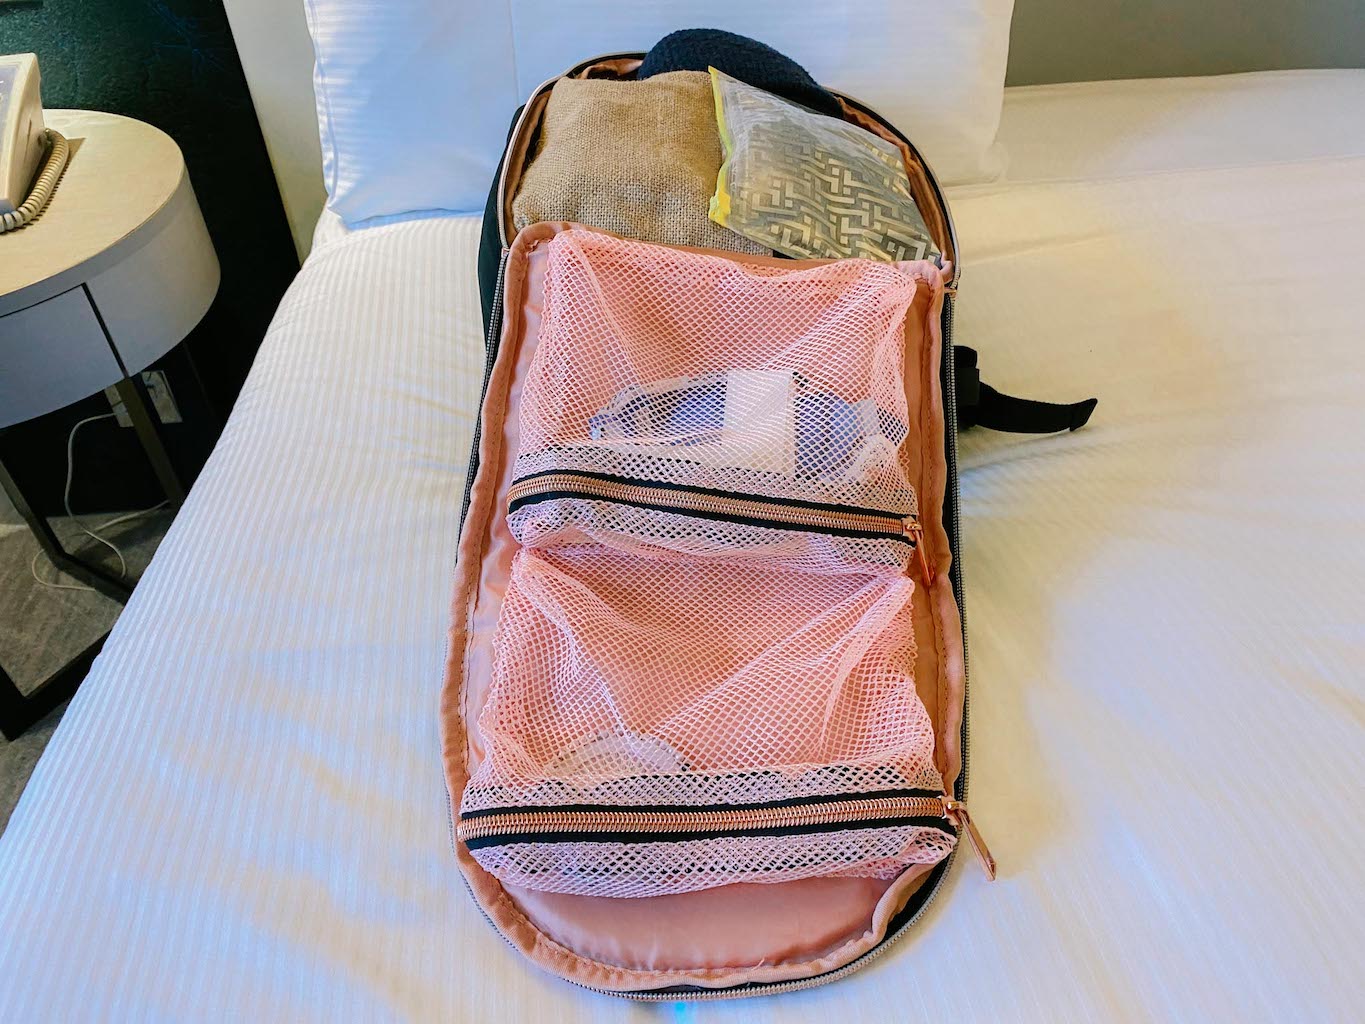 Travel Hack Backpack, Best Backpack for travelling women, Travel Hack Backpack inside pockets